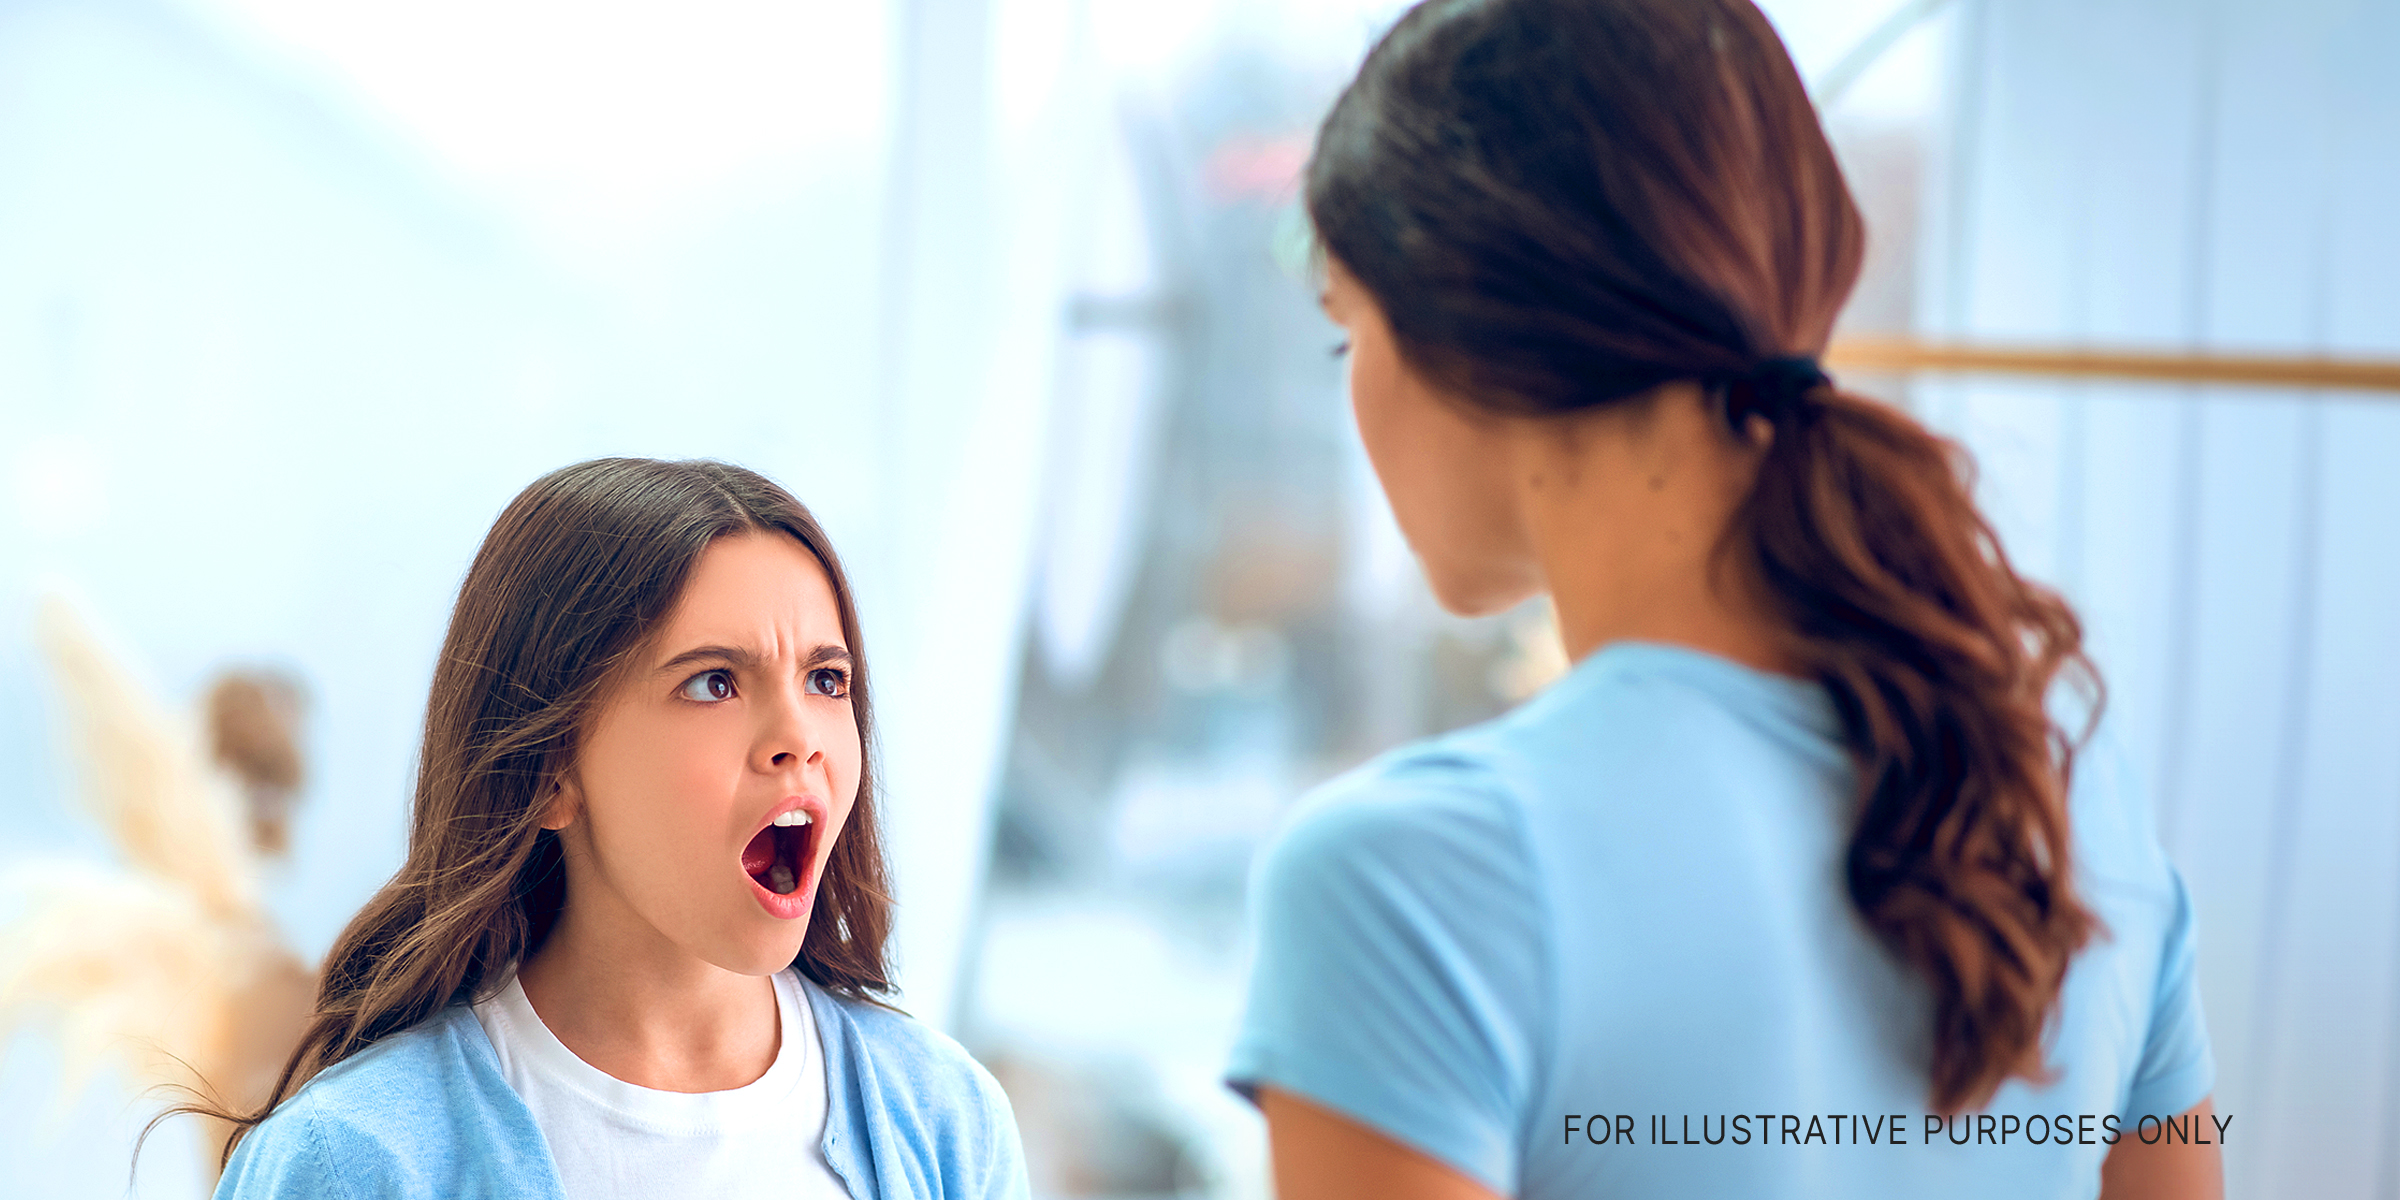 Ein Mädchen im Teenageralter schreit die Frau an, die vor ihr steht | Quelle: Shutterstock